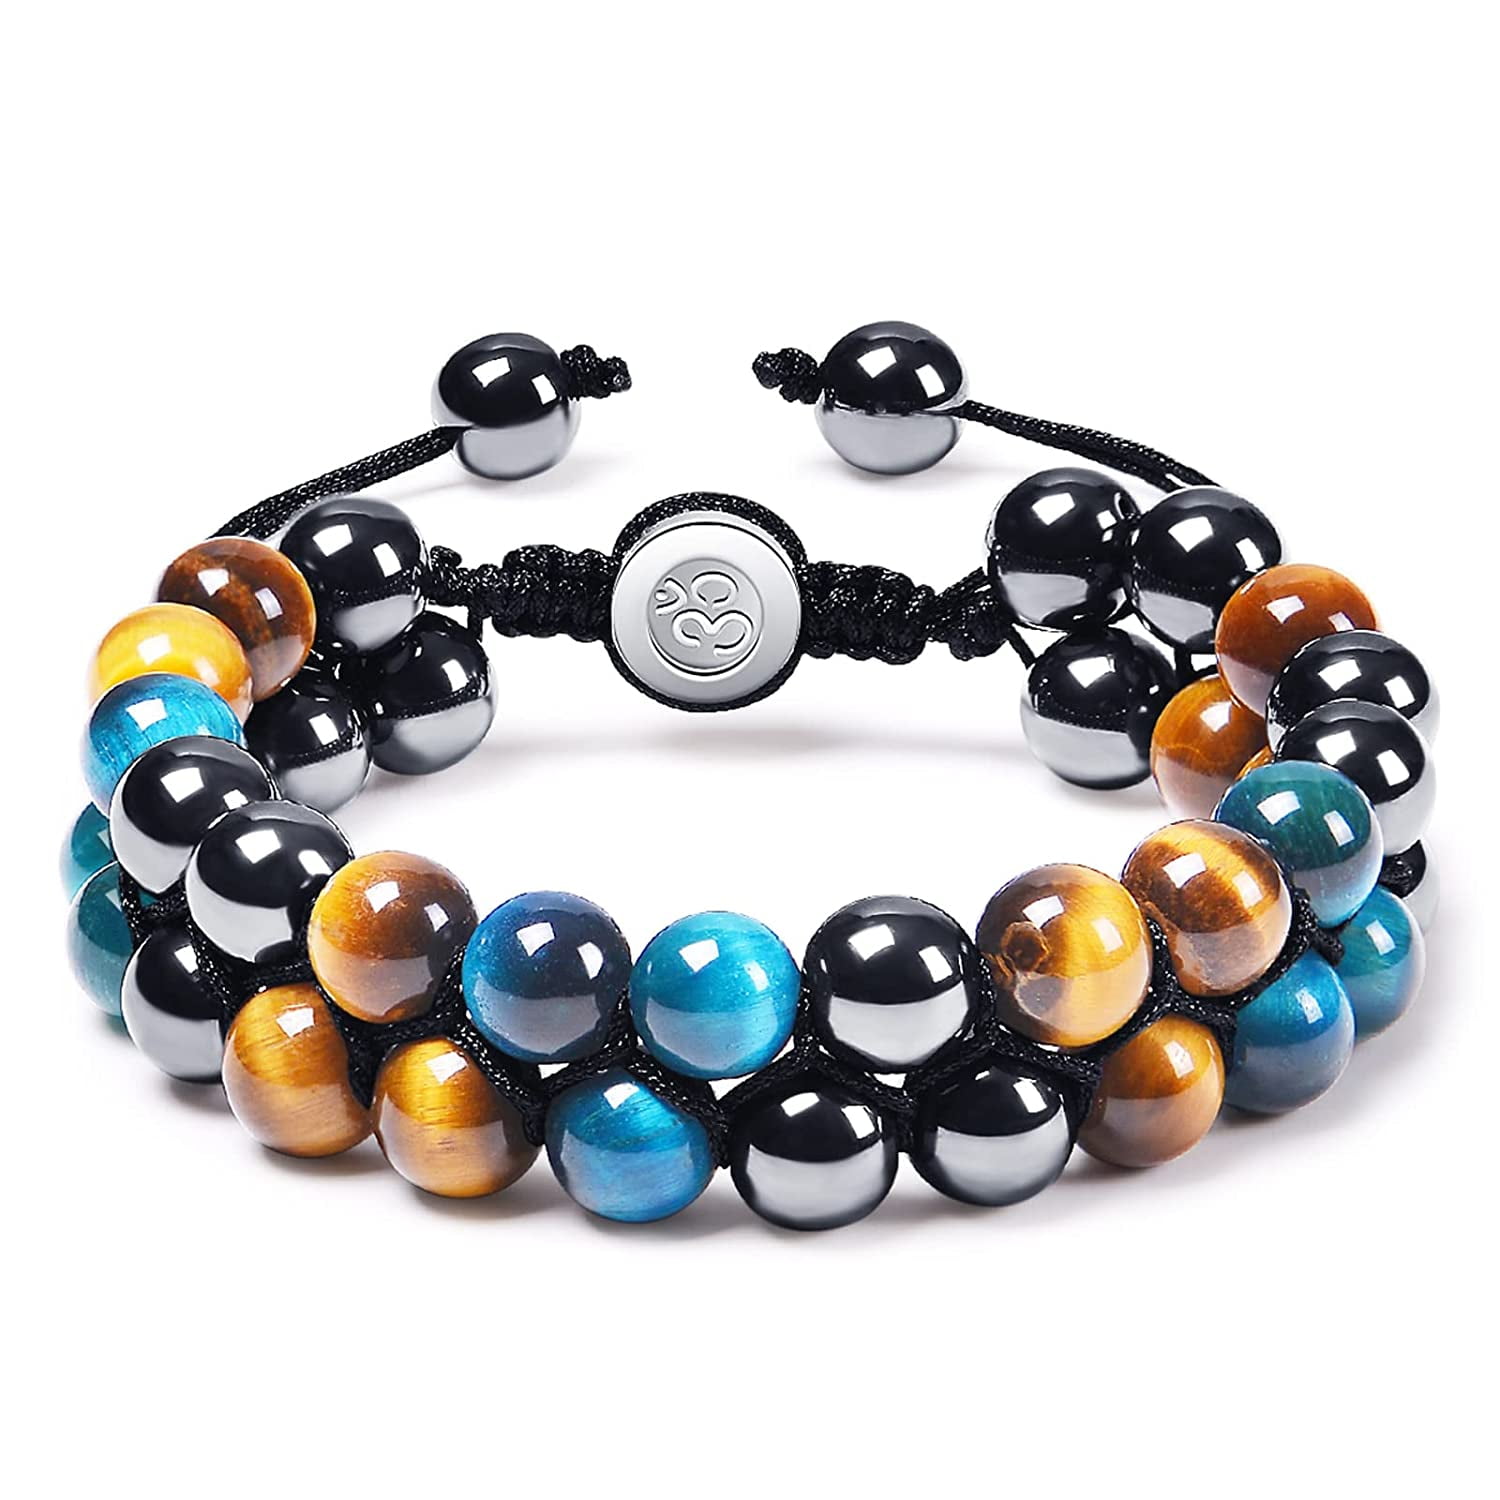 Triple Wrap Bracelet/ Seed Bead Bracelet/ Beaded Bracelet for Women/ Gifts  for Her/ Bead Leather Bracelet/ Boho Jewelry. - Etsy